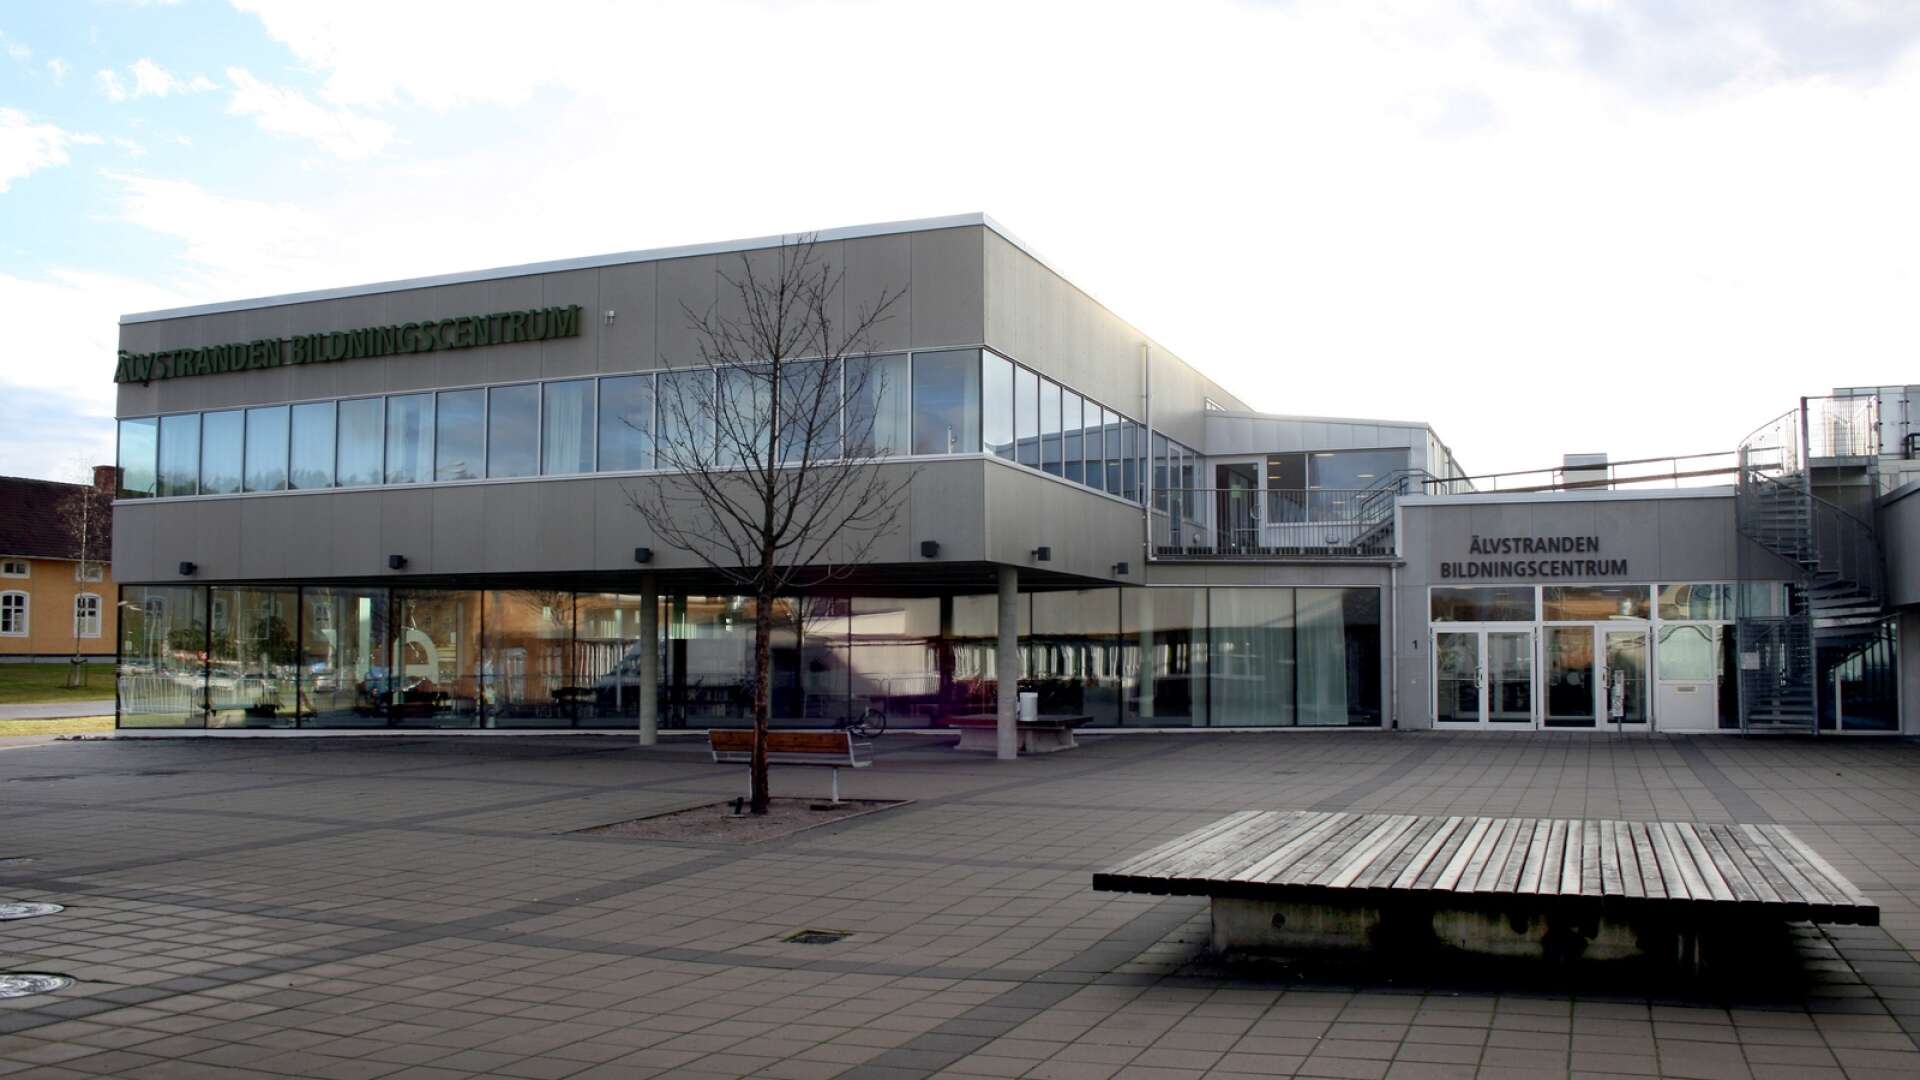 Hagfors lärcentrum är förlagt till Älvstranden bildningscentrum.